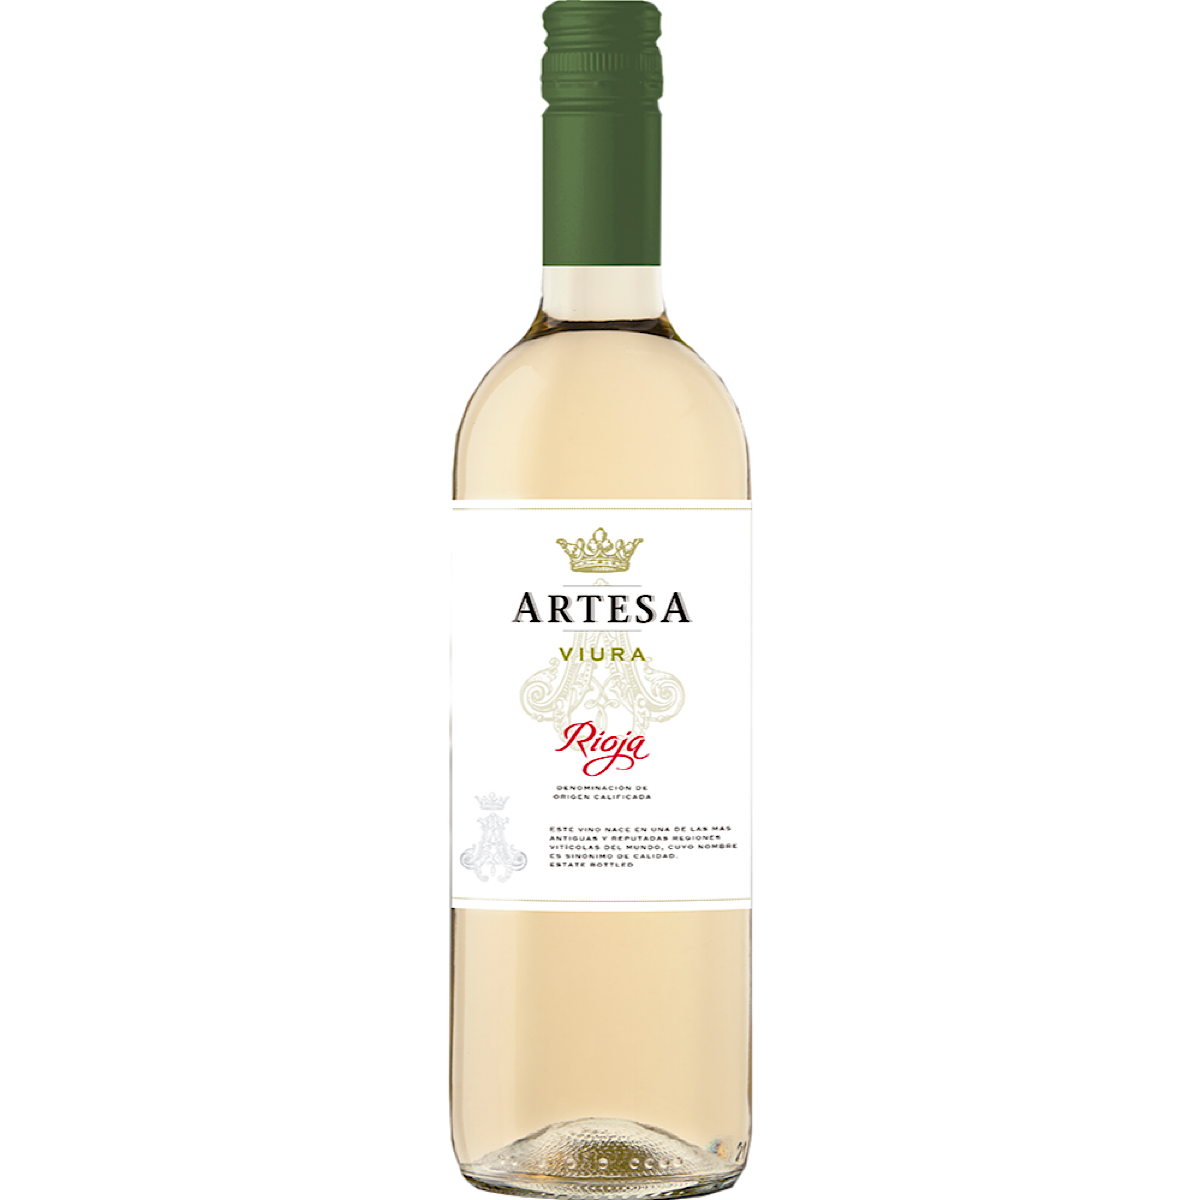 Artesa Rioja Viura 6 Bottle Case 75cl